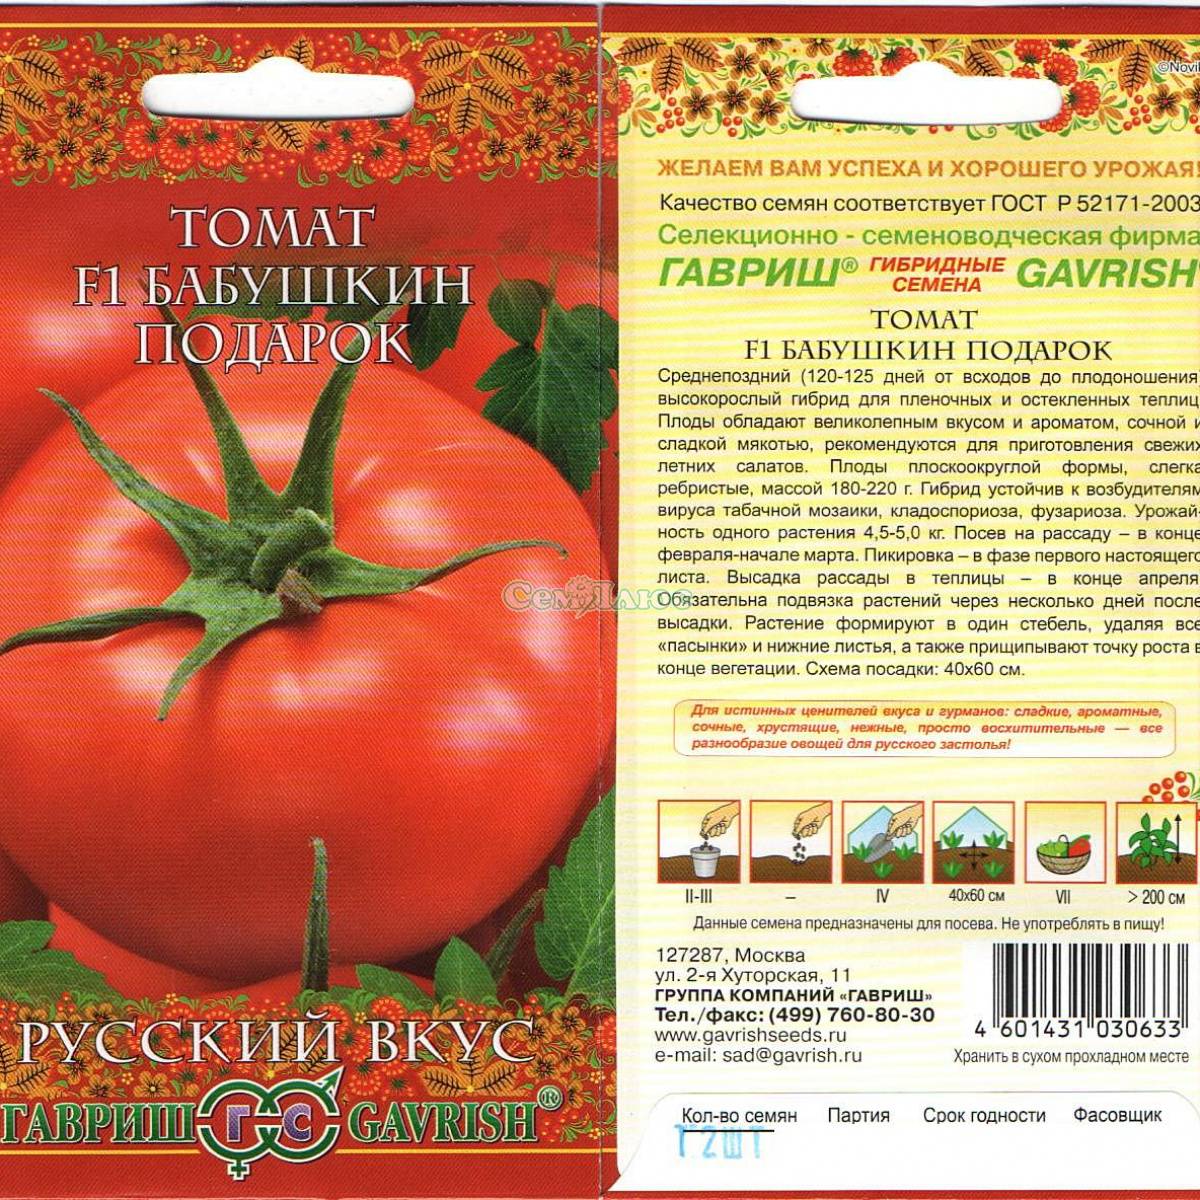 Томат дружок f1: отзывы об урожайности помидоров, характеристика и описание сорта, фото куста